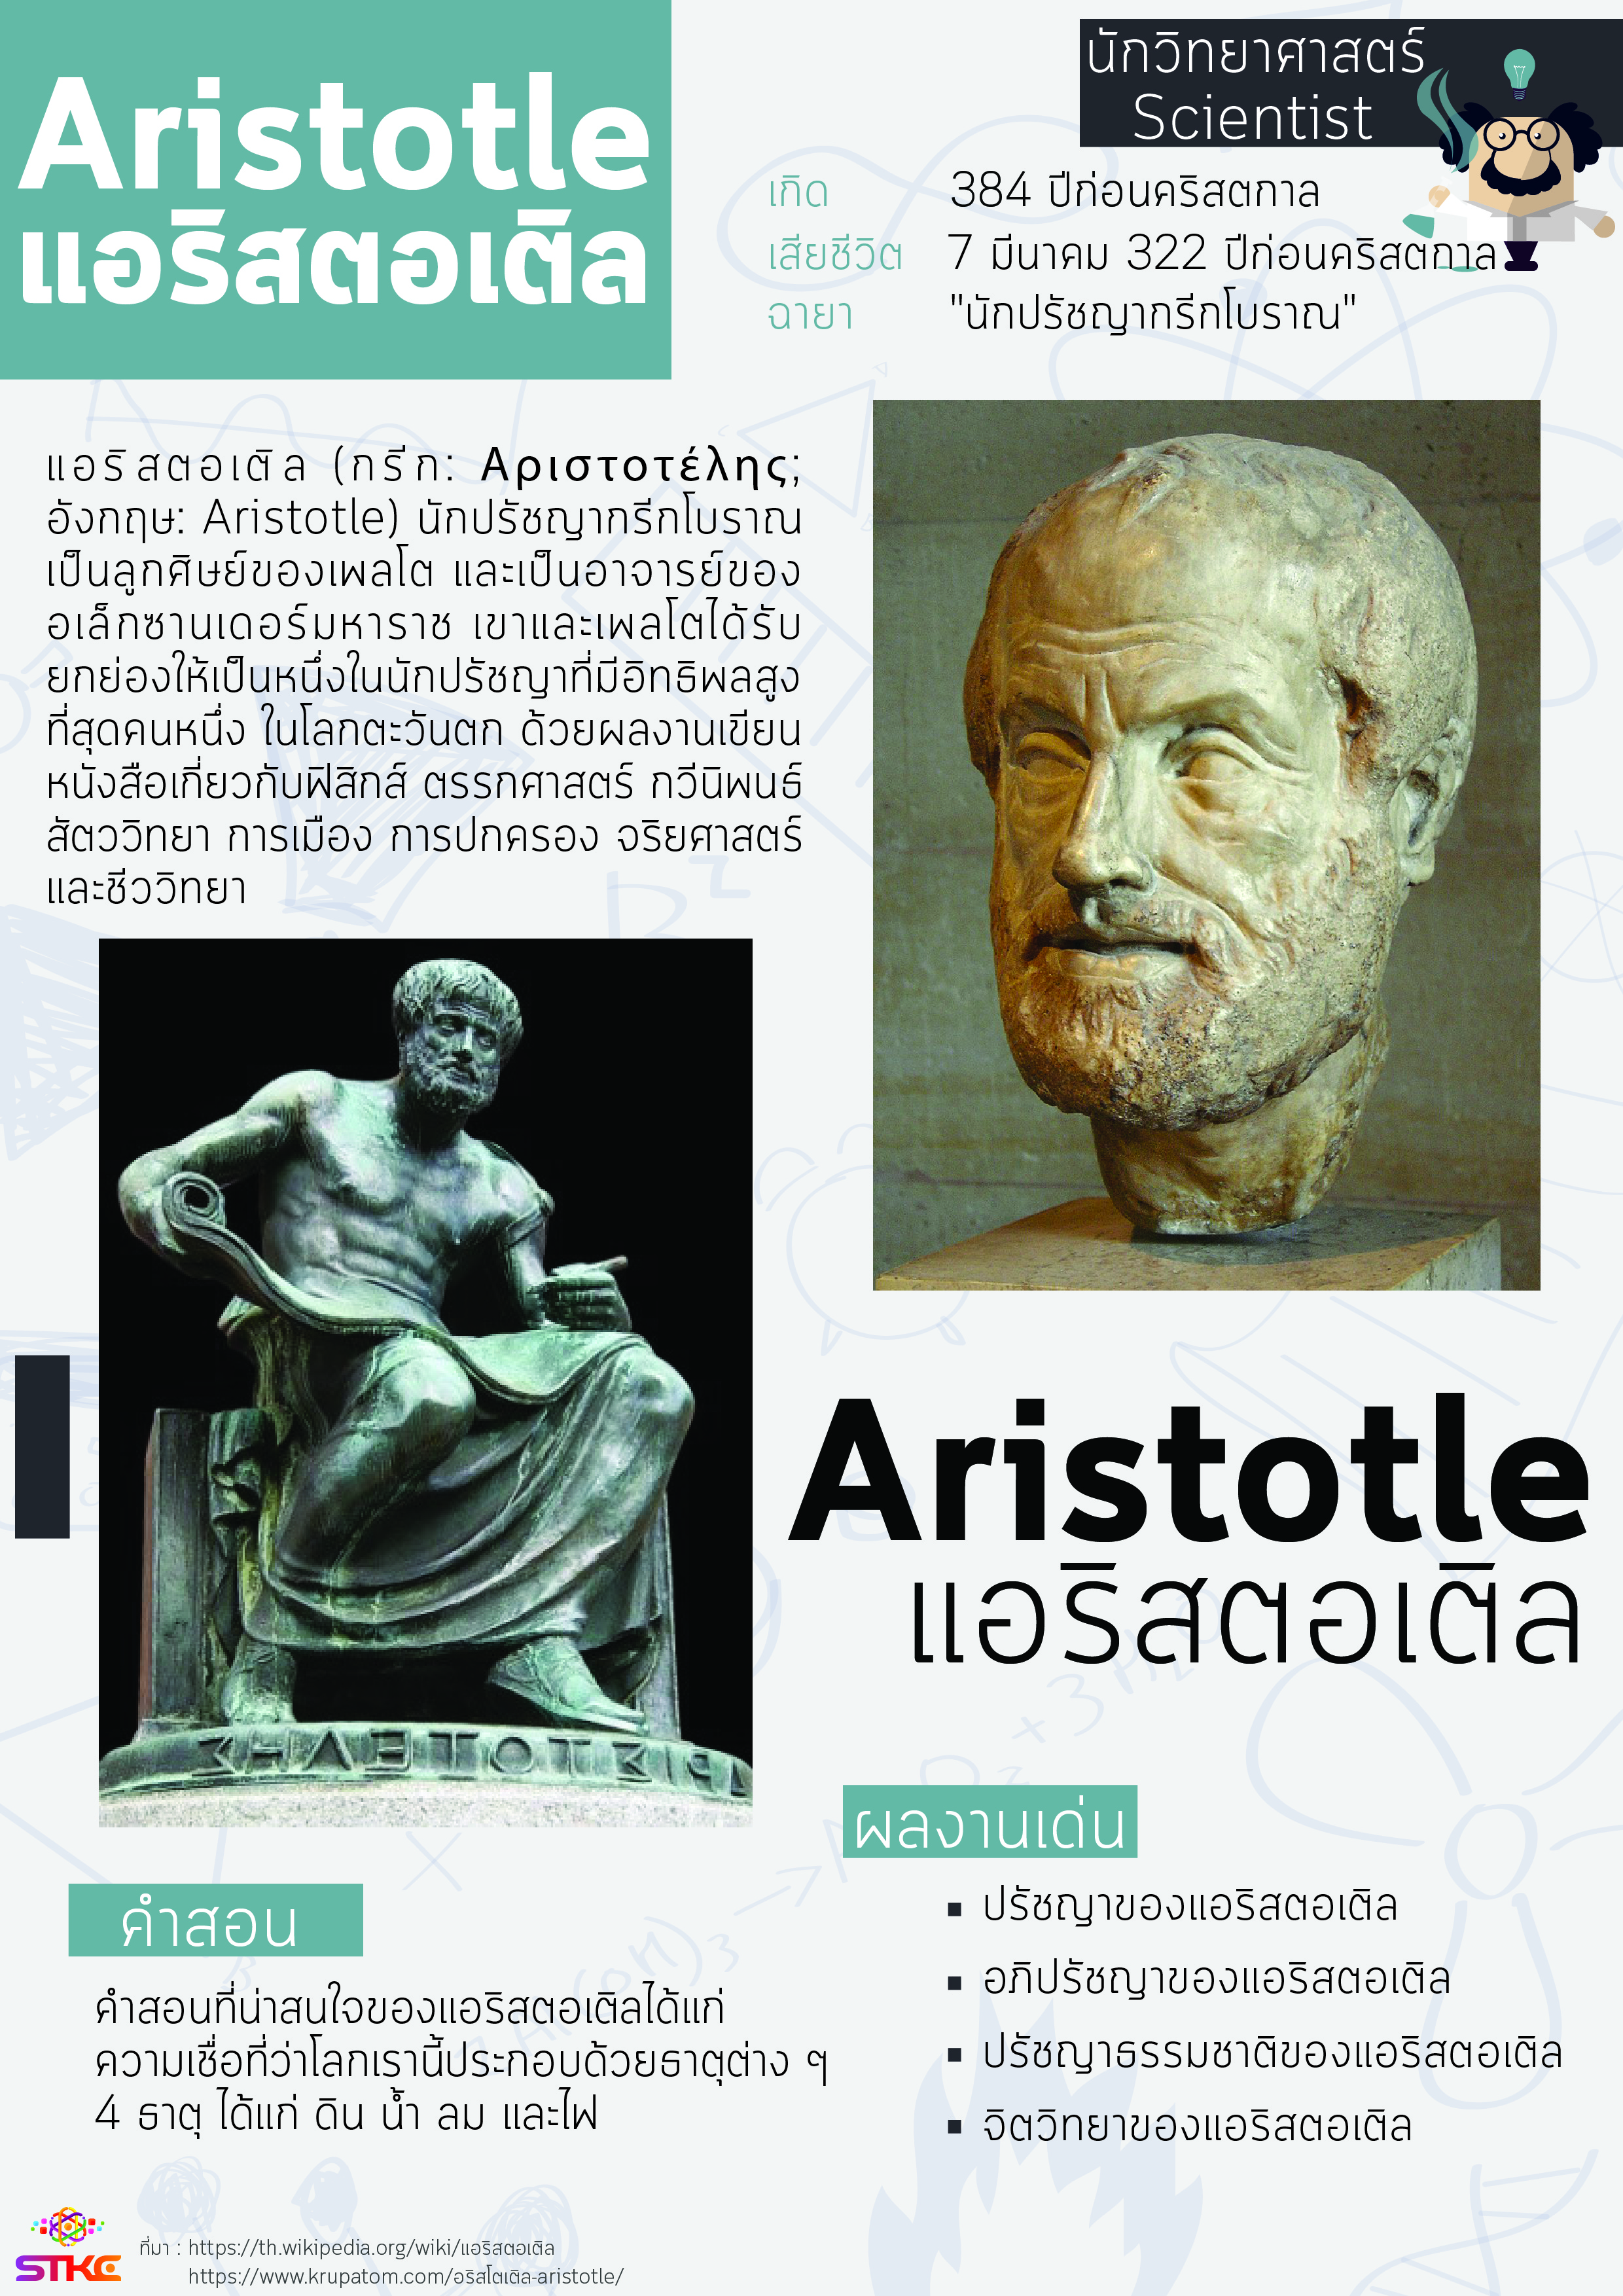 นักวิทยาศาสตร์ แอริสตอเติล (Aristotle)